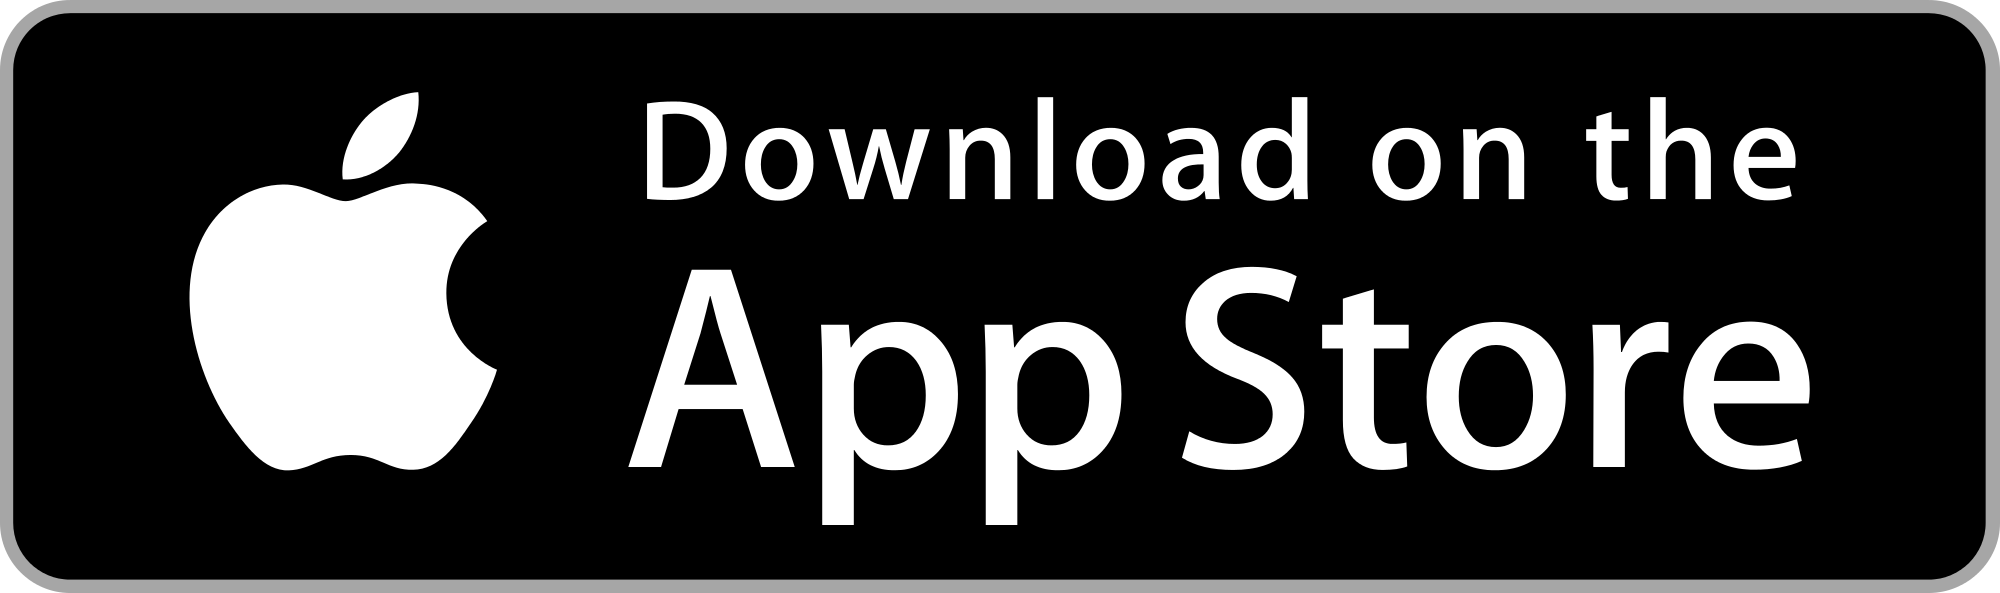 Download de Meldpunt Accijns-app in de Apple Store!